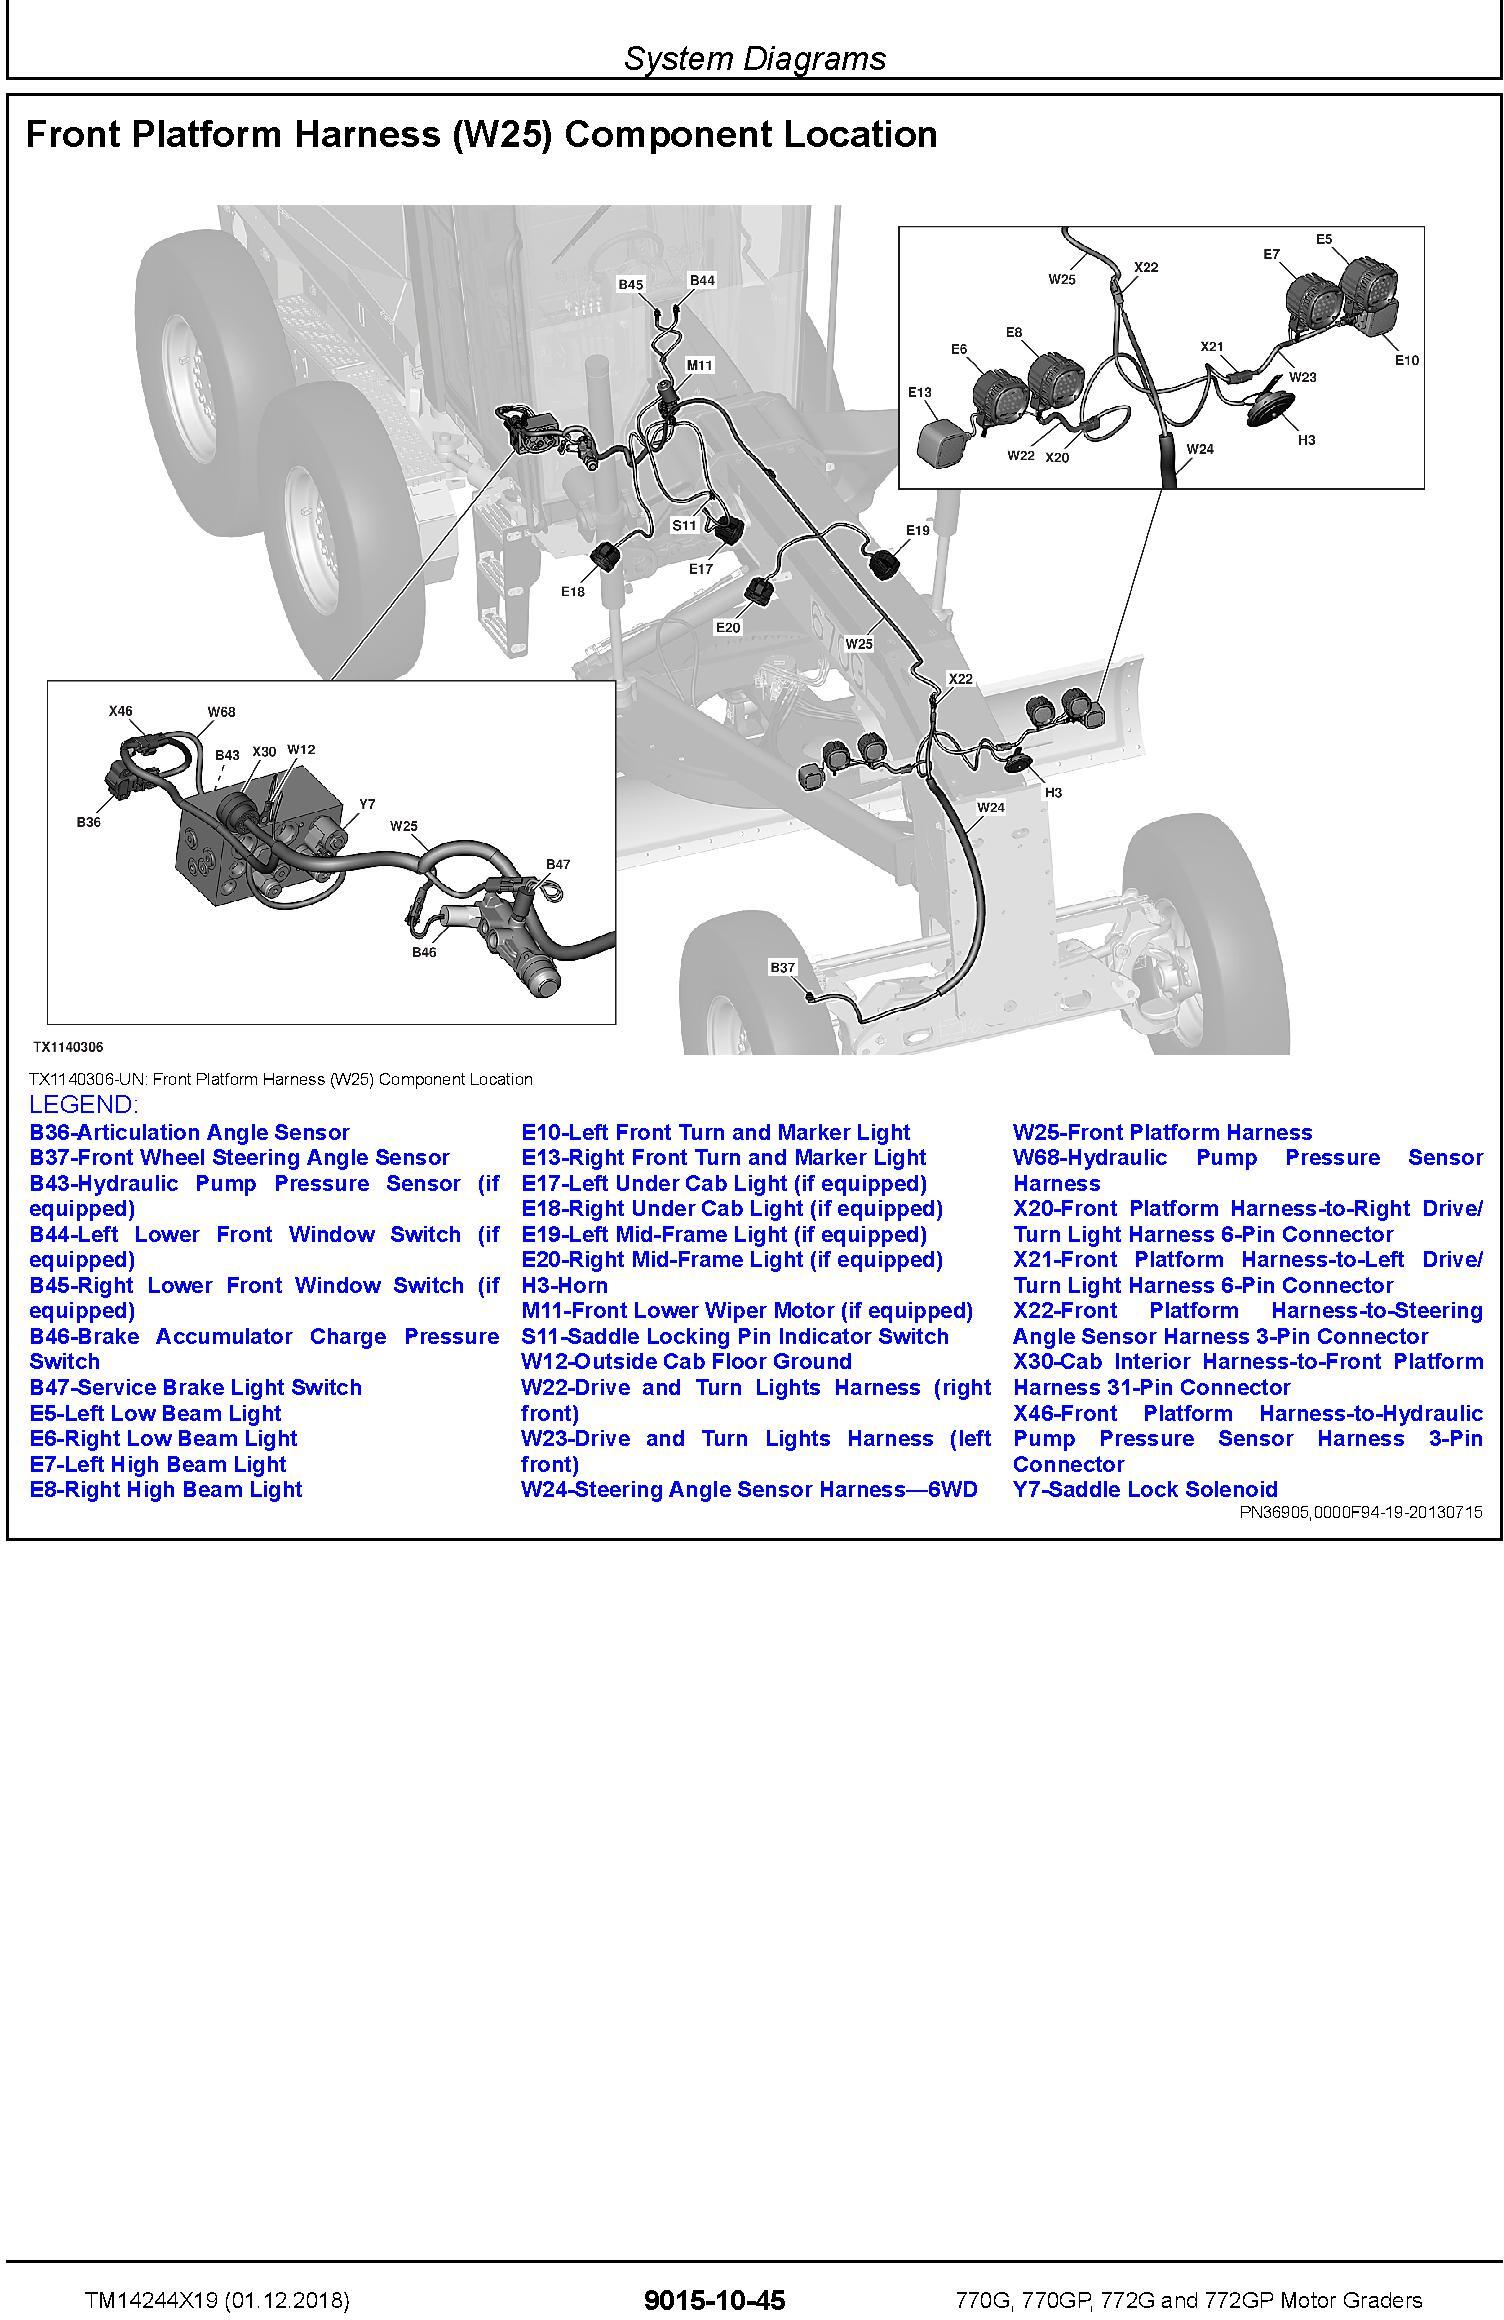 John Deere 770G,770GP, 772G,772GP (SN.F680878-,L700954) Motor Graders Diagnostic Manual (TM14244X19) - 1